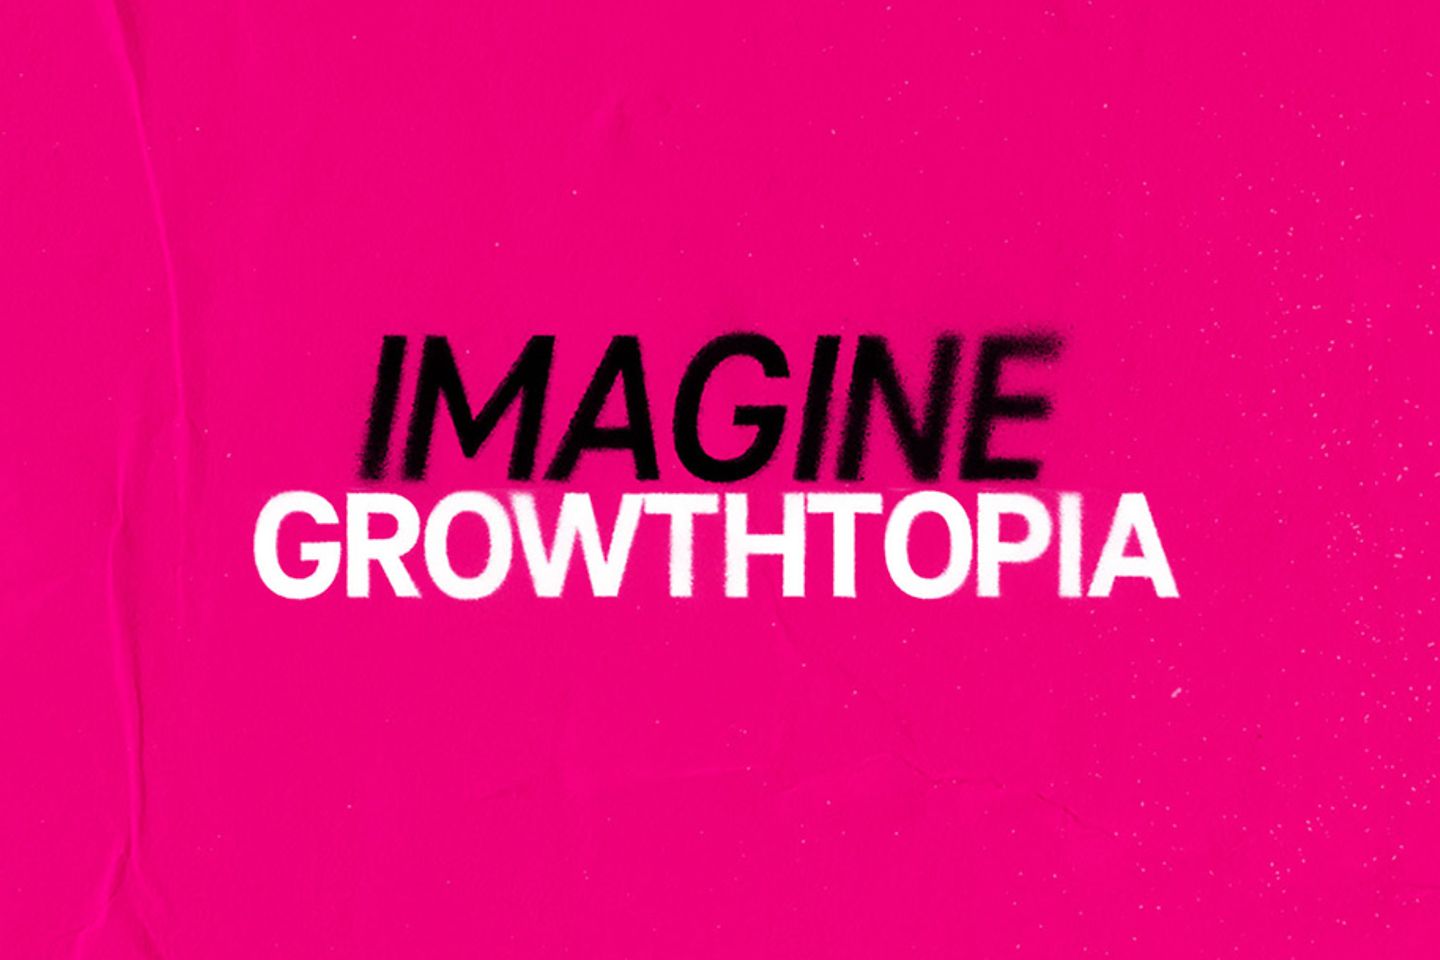 Imagen con error tipográfico “Crea tu growthtopia/crecitopía”